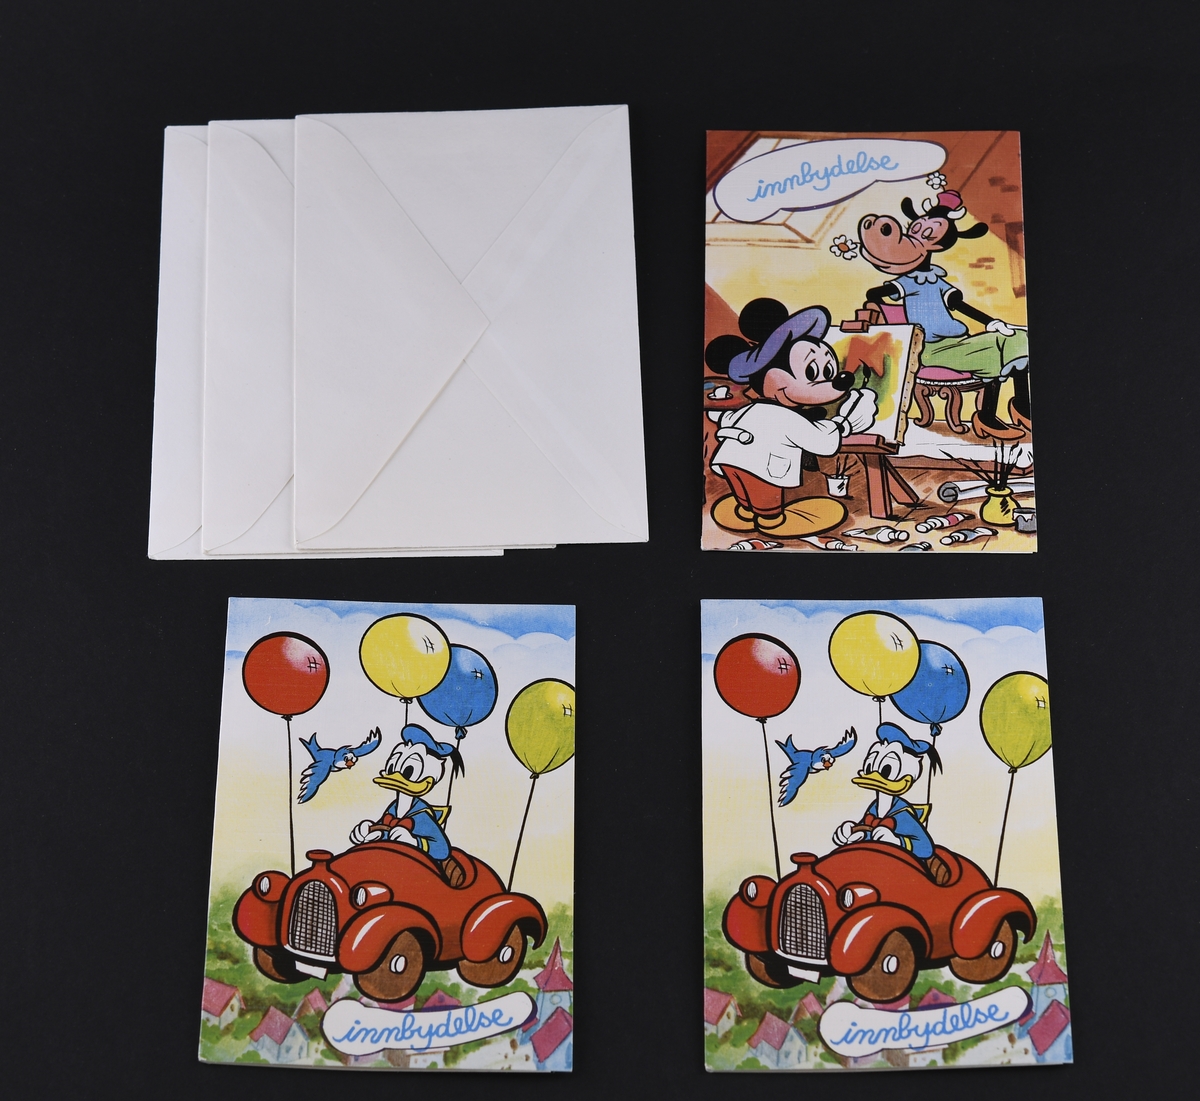 Tre bursdagsinvitasjonskort av papp, med hvite konvolutter. Motiv fra Disney på kortene.